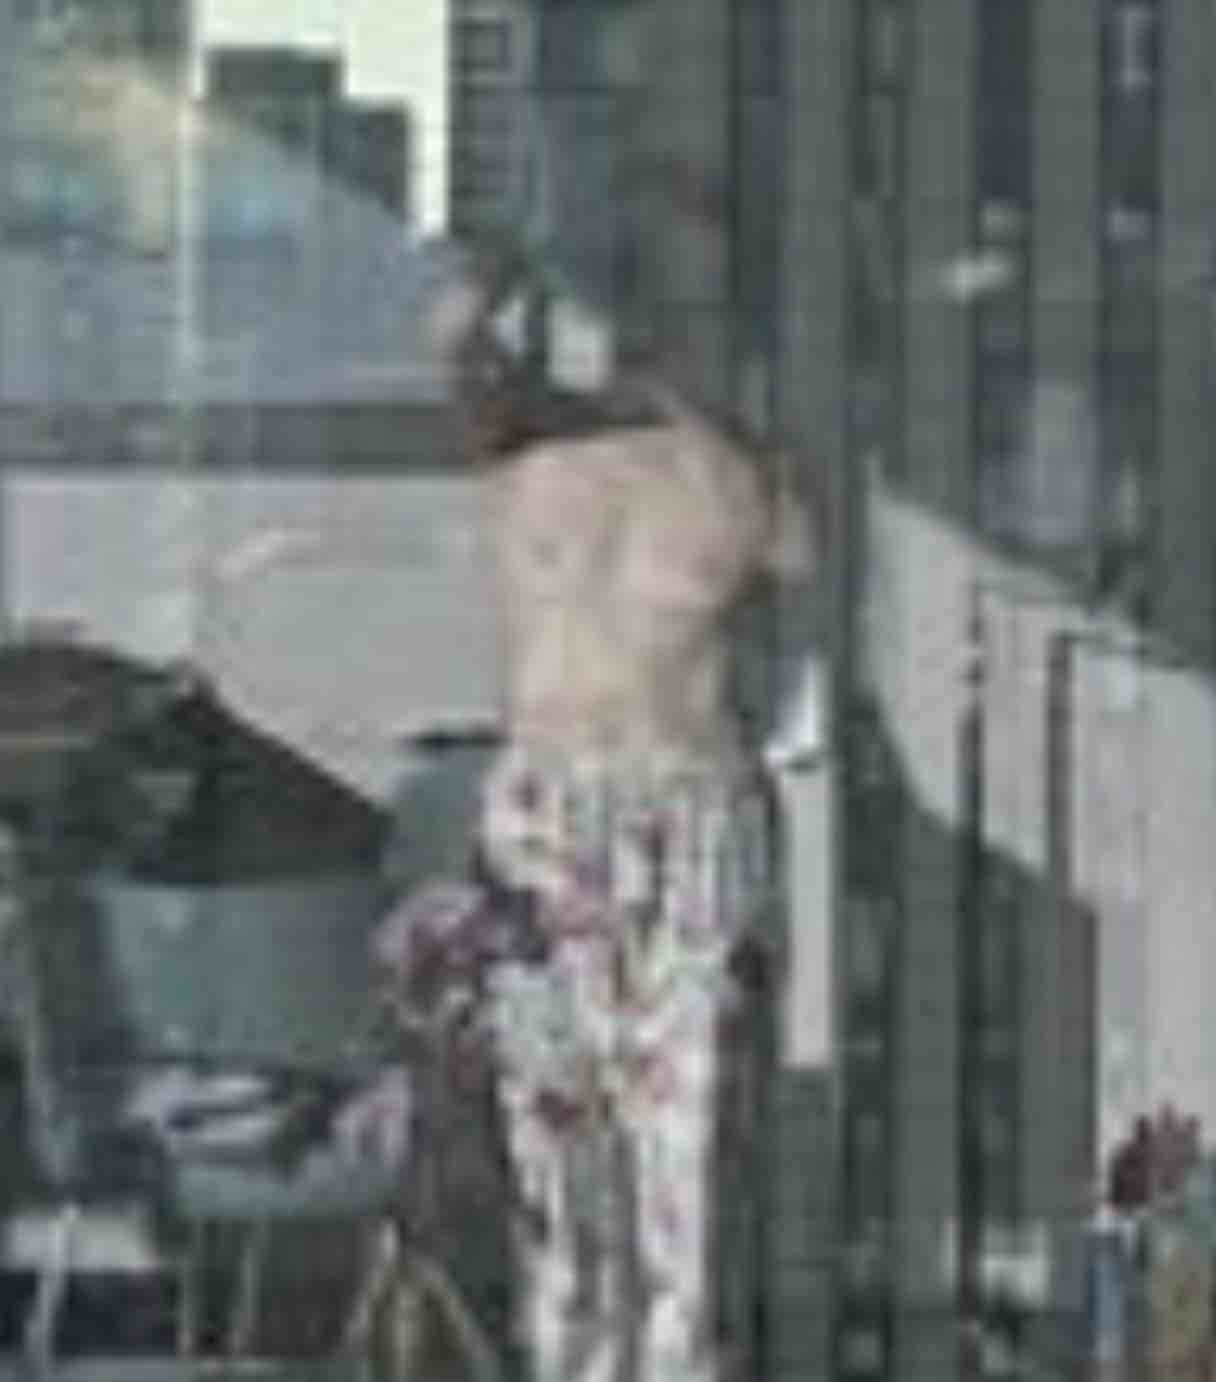 松居一代、アメブロでの胸露出に「前期高齢者の裸」サイバーが注意…船越英一郎の元妻